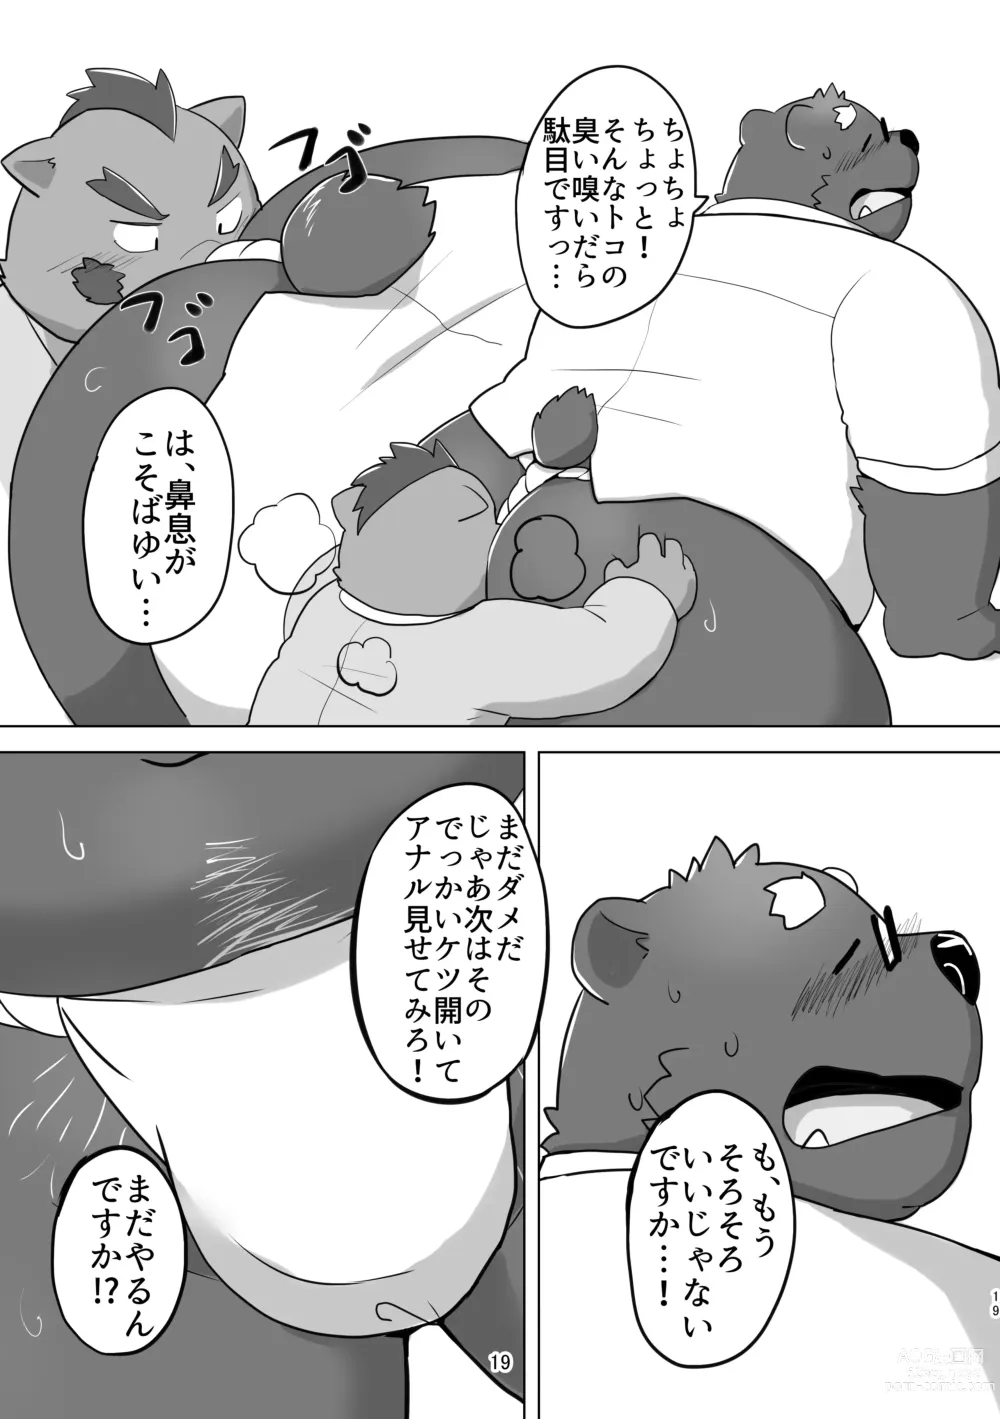 Page 19 of doujinshi KUMAPAPA 1